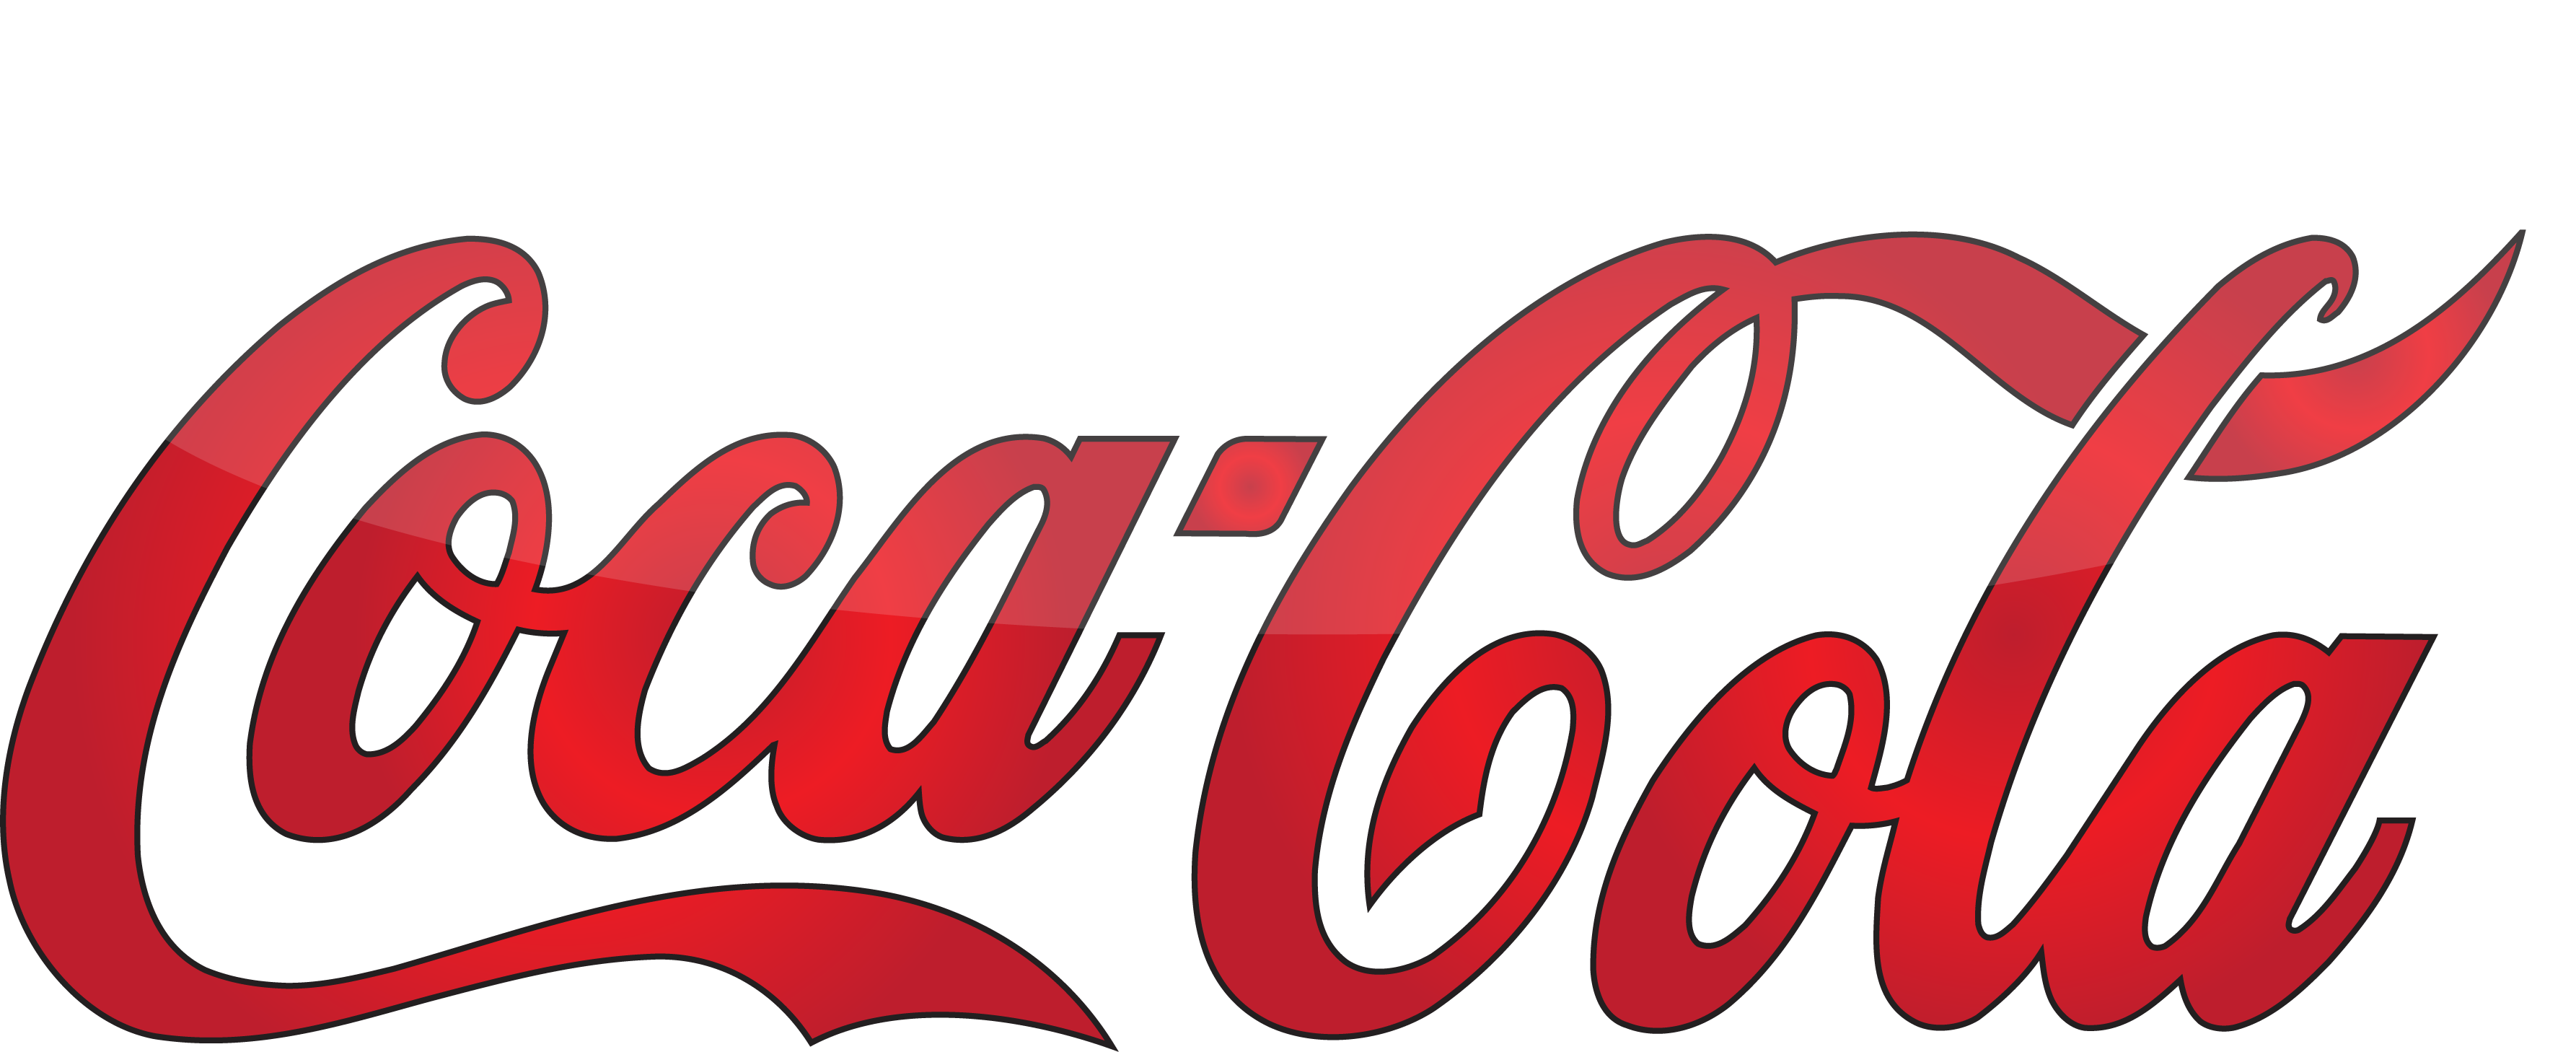 Vintage Coca Cola Clipart   Cliparthut   Free Clipart